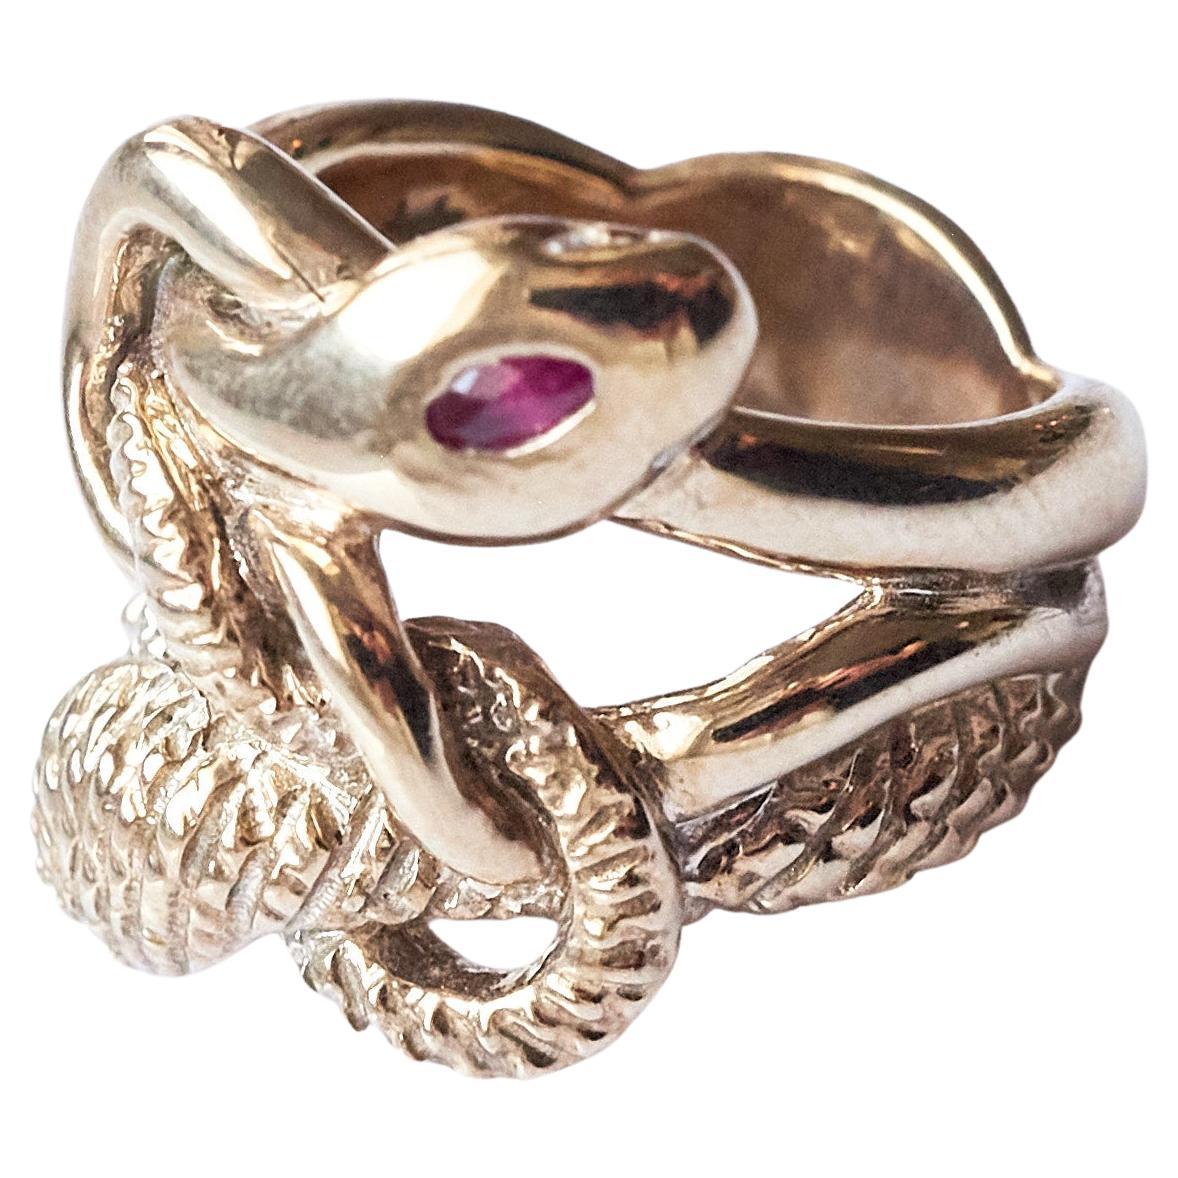 Rubin Marquis Smaragd Weiß Diamant Schlange Ring 
Stil: Cocktail-Ring 
MATERIAL: Polierte Bronze 
Designer: J DAUPHIN

J DAUPHIN-Schmuck wird in Los Angeles handgefertigt und wurde von der Designerin Johanna Dauphin entworfen. Die meisten